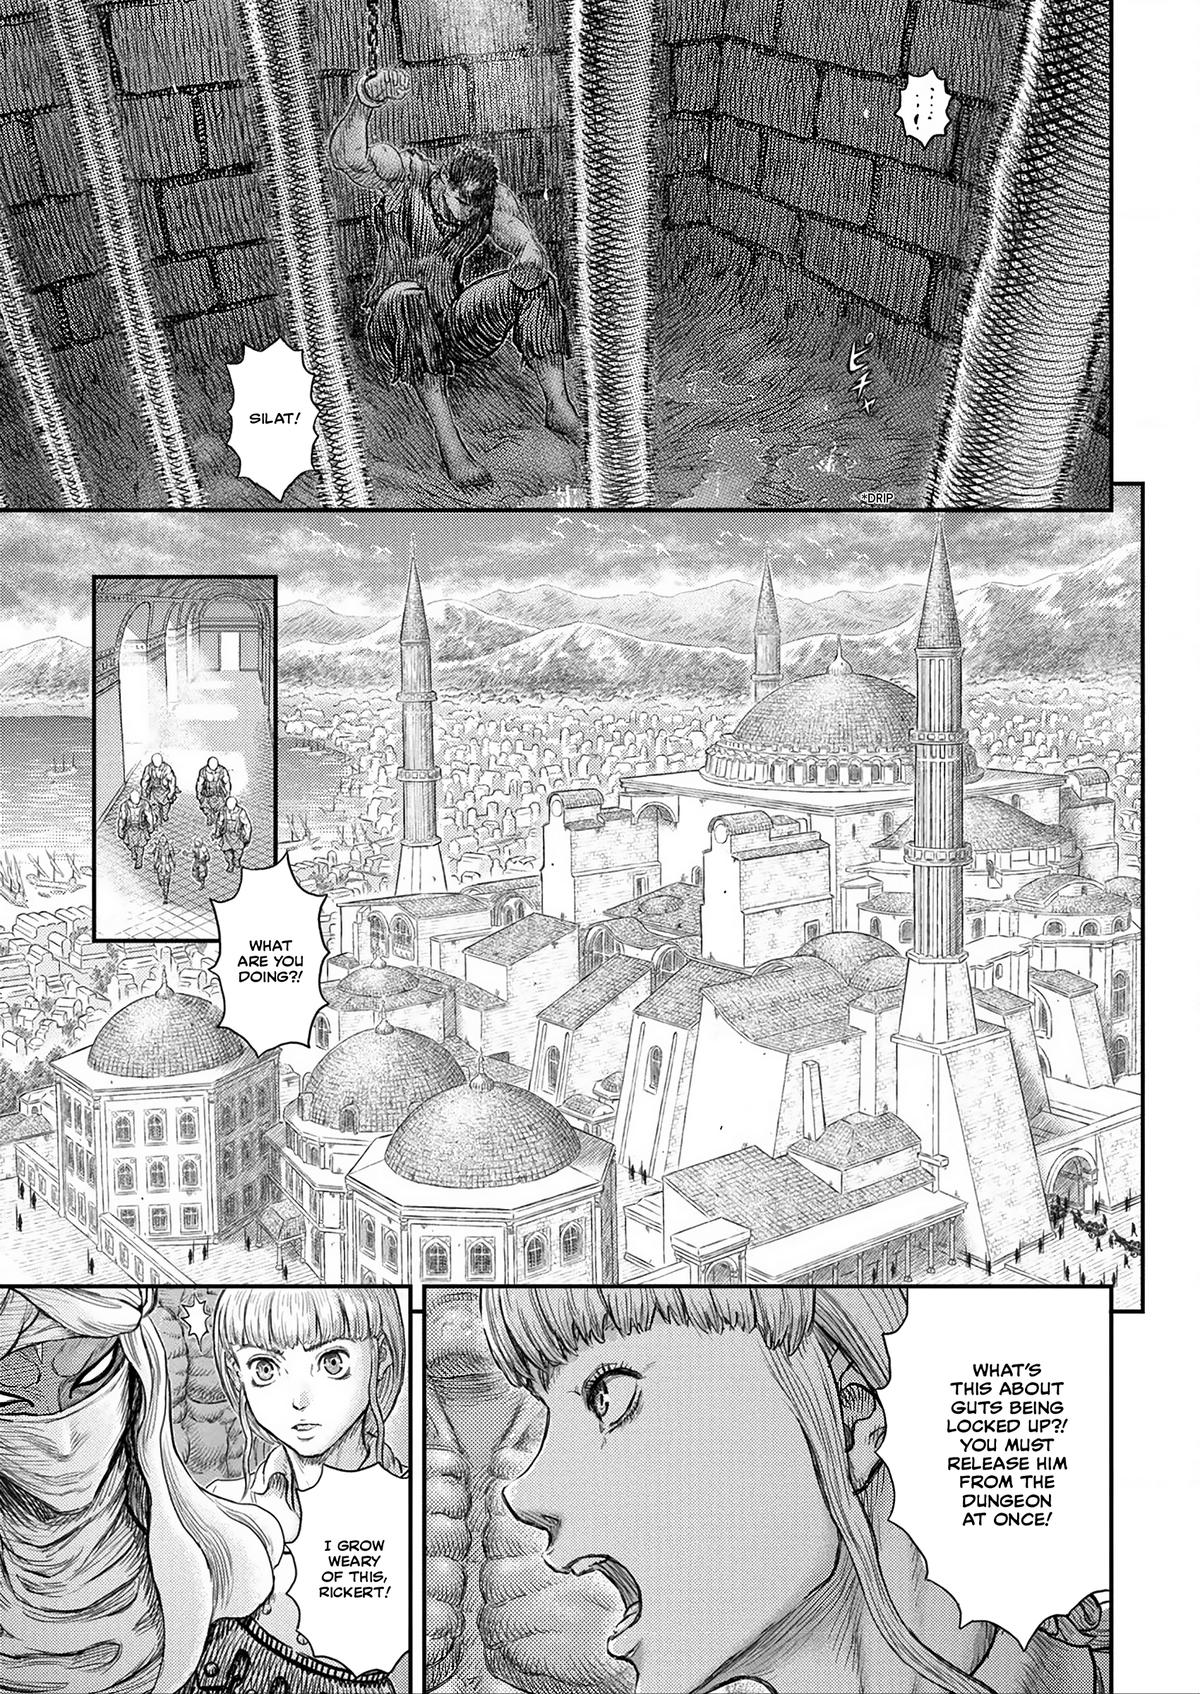 Berserk Manga Chapter 376 image 06